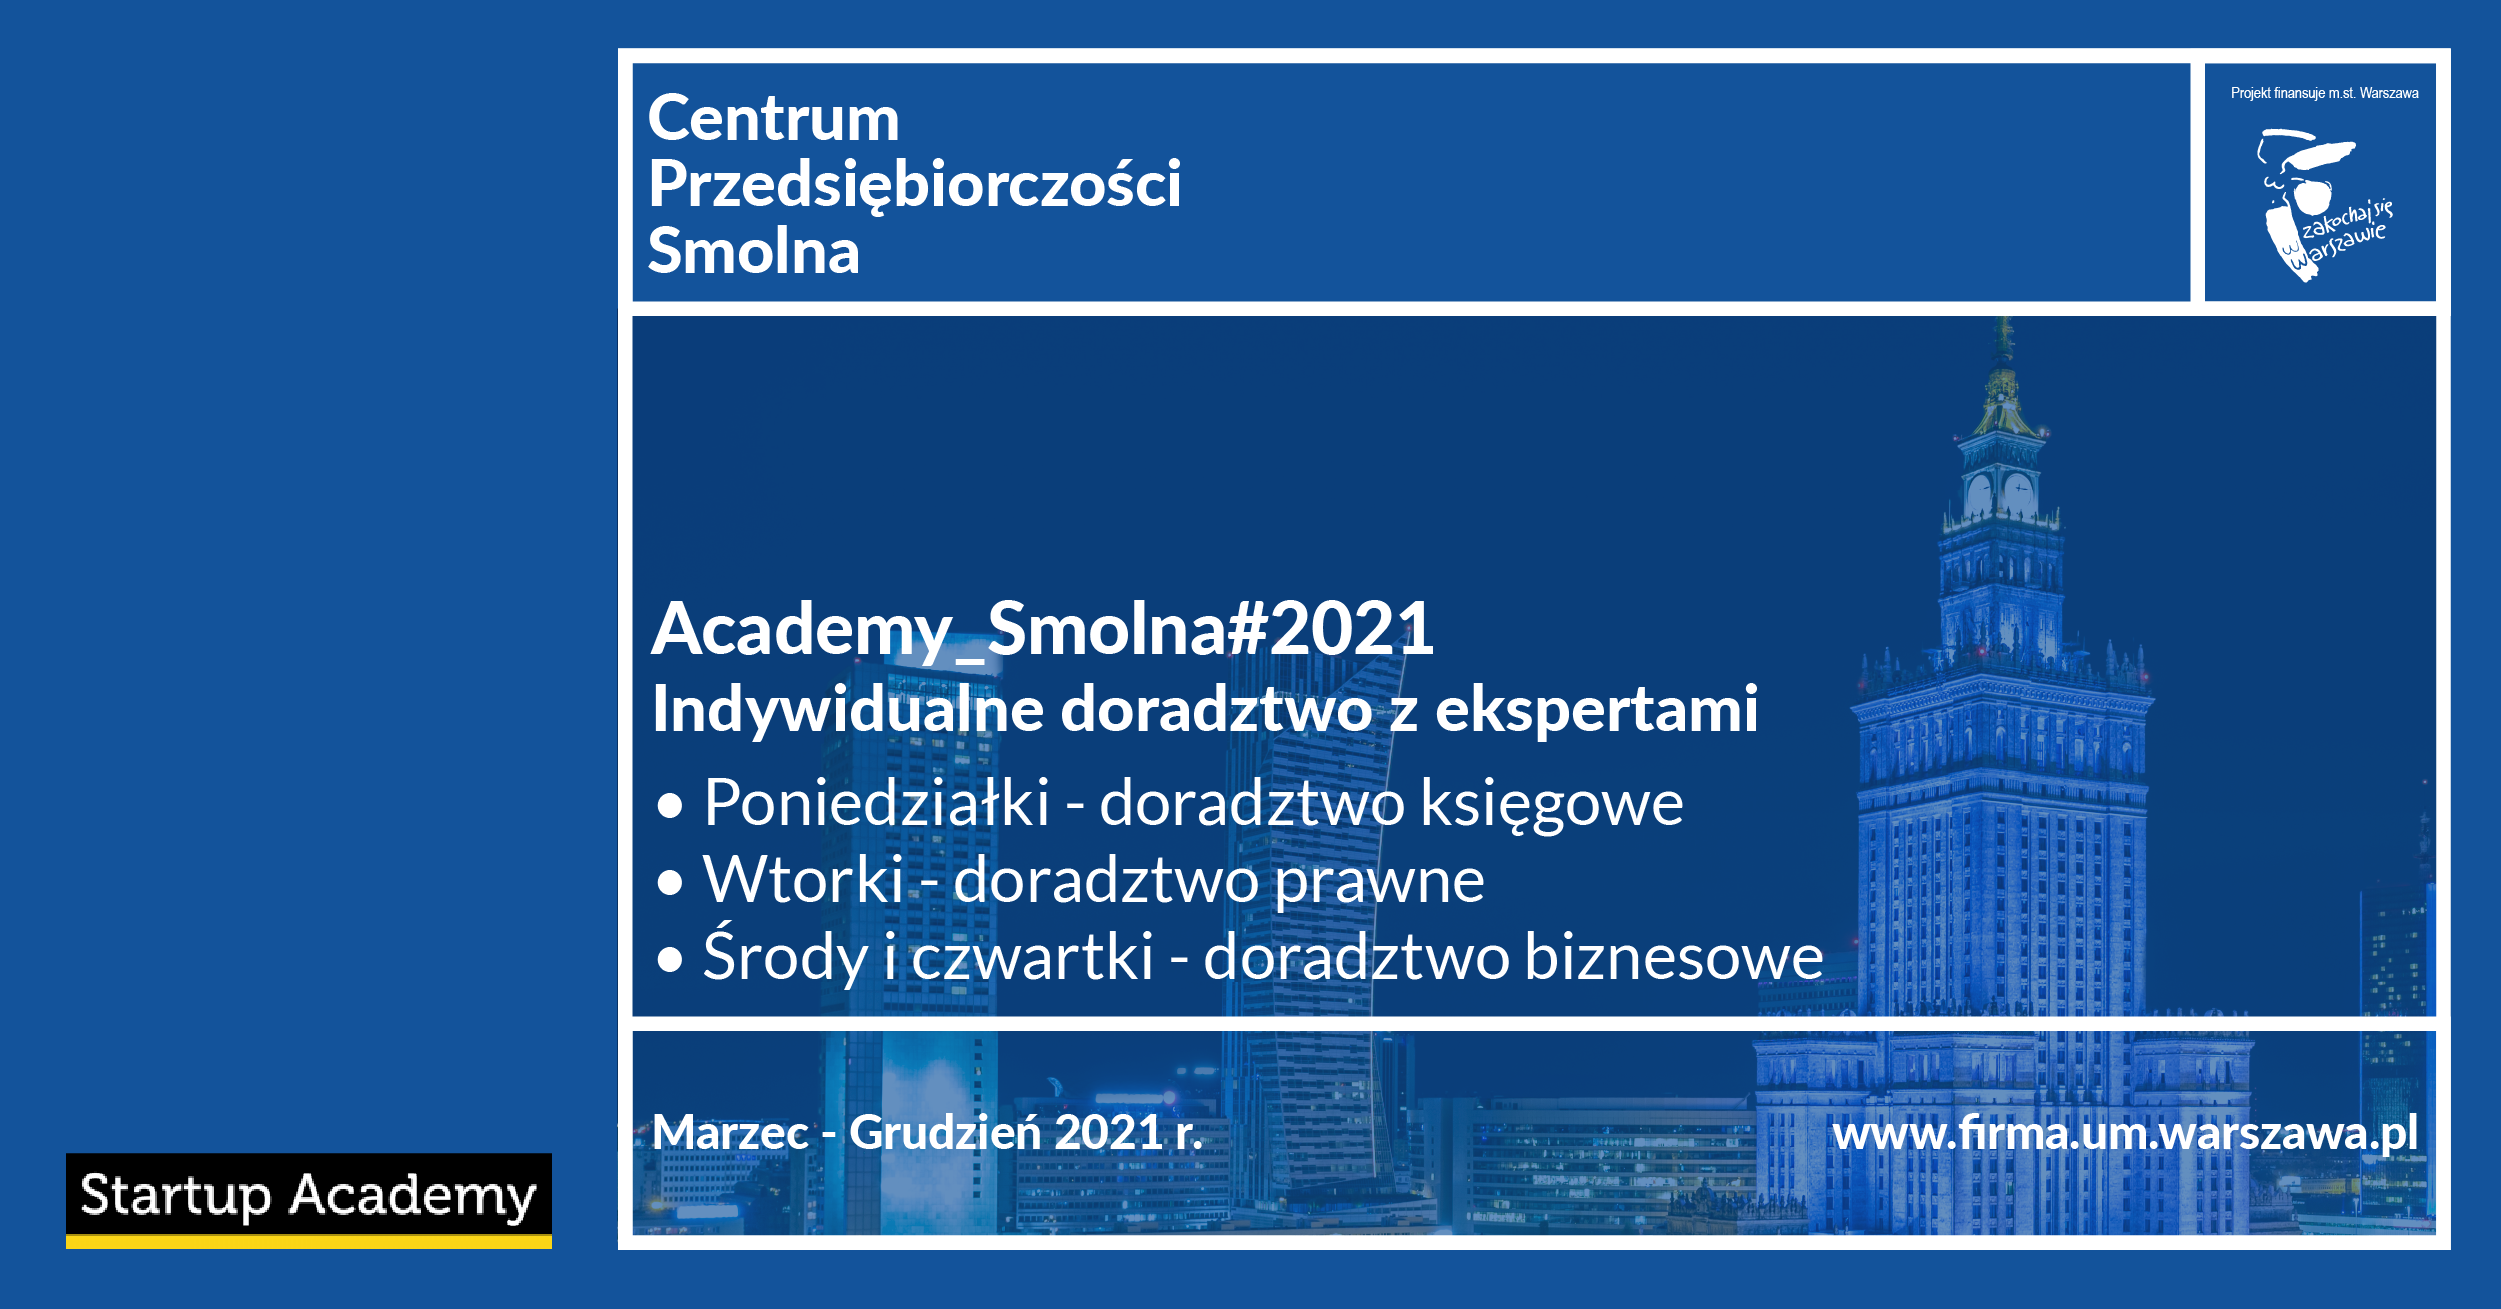 Darmowe doradztwo dla warszawskich przedsiębiorców - trwają zapisy do Academy_Smolna#2021